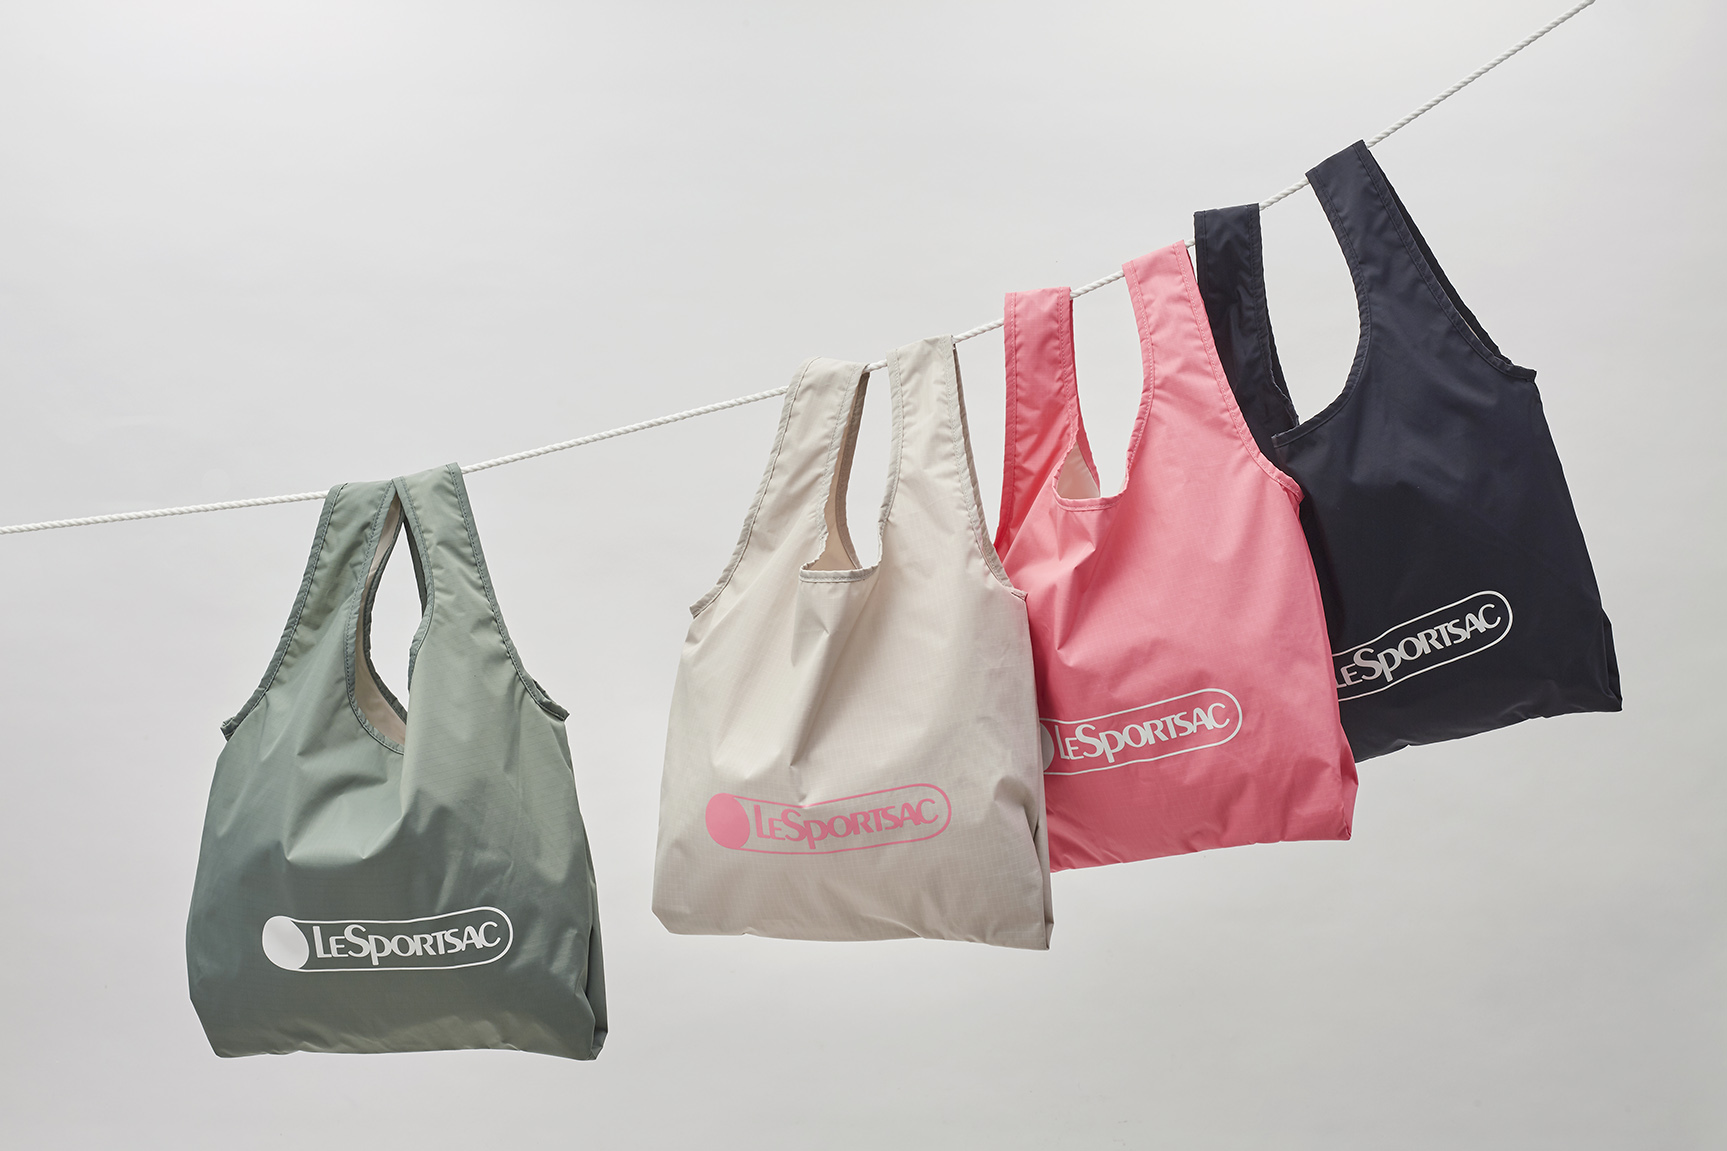 レスポートサックから リップストップナイロン素材のショッパーバッグが登場 6 17 水 発売 株式会社 レスポートサック ジャパンのプレスリリース